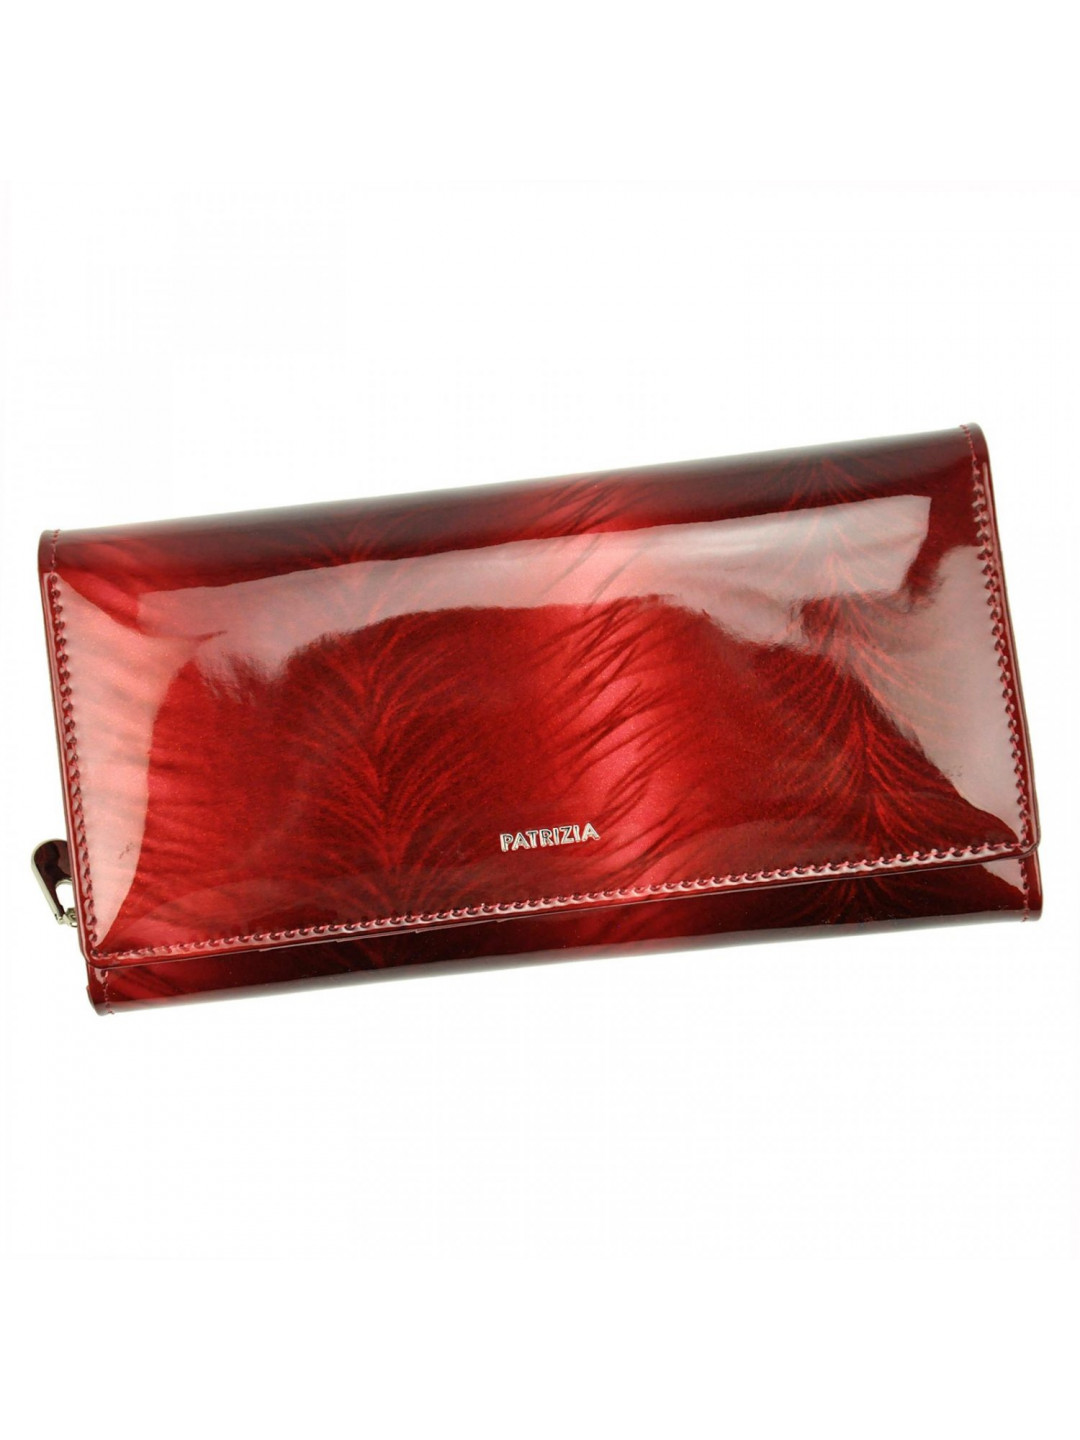 Luxusní dámská peněženka Patrizia Dollvina červená